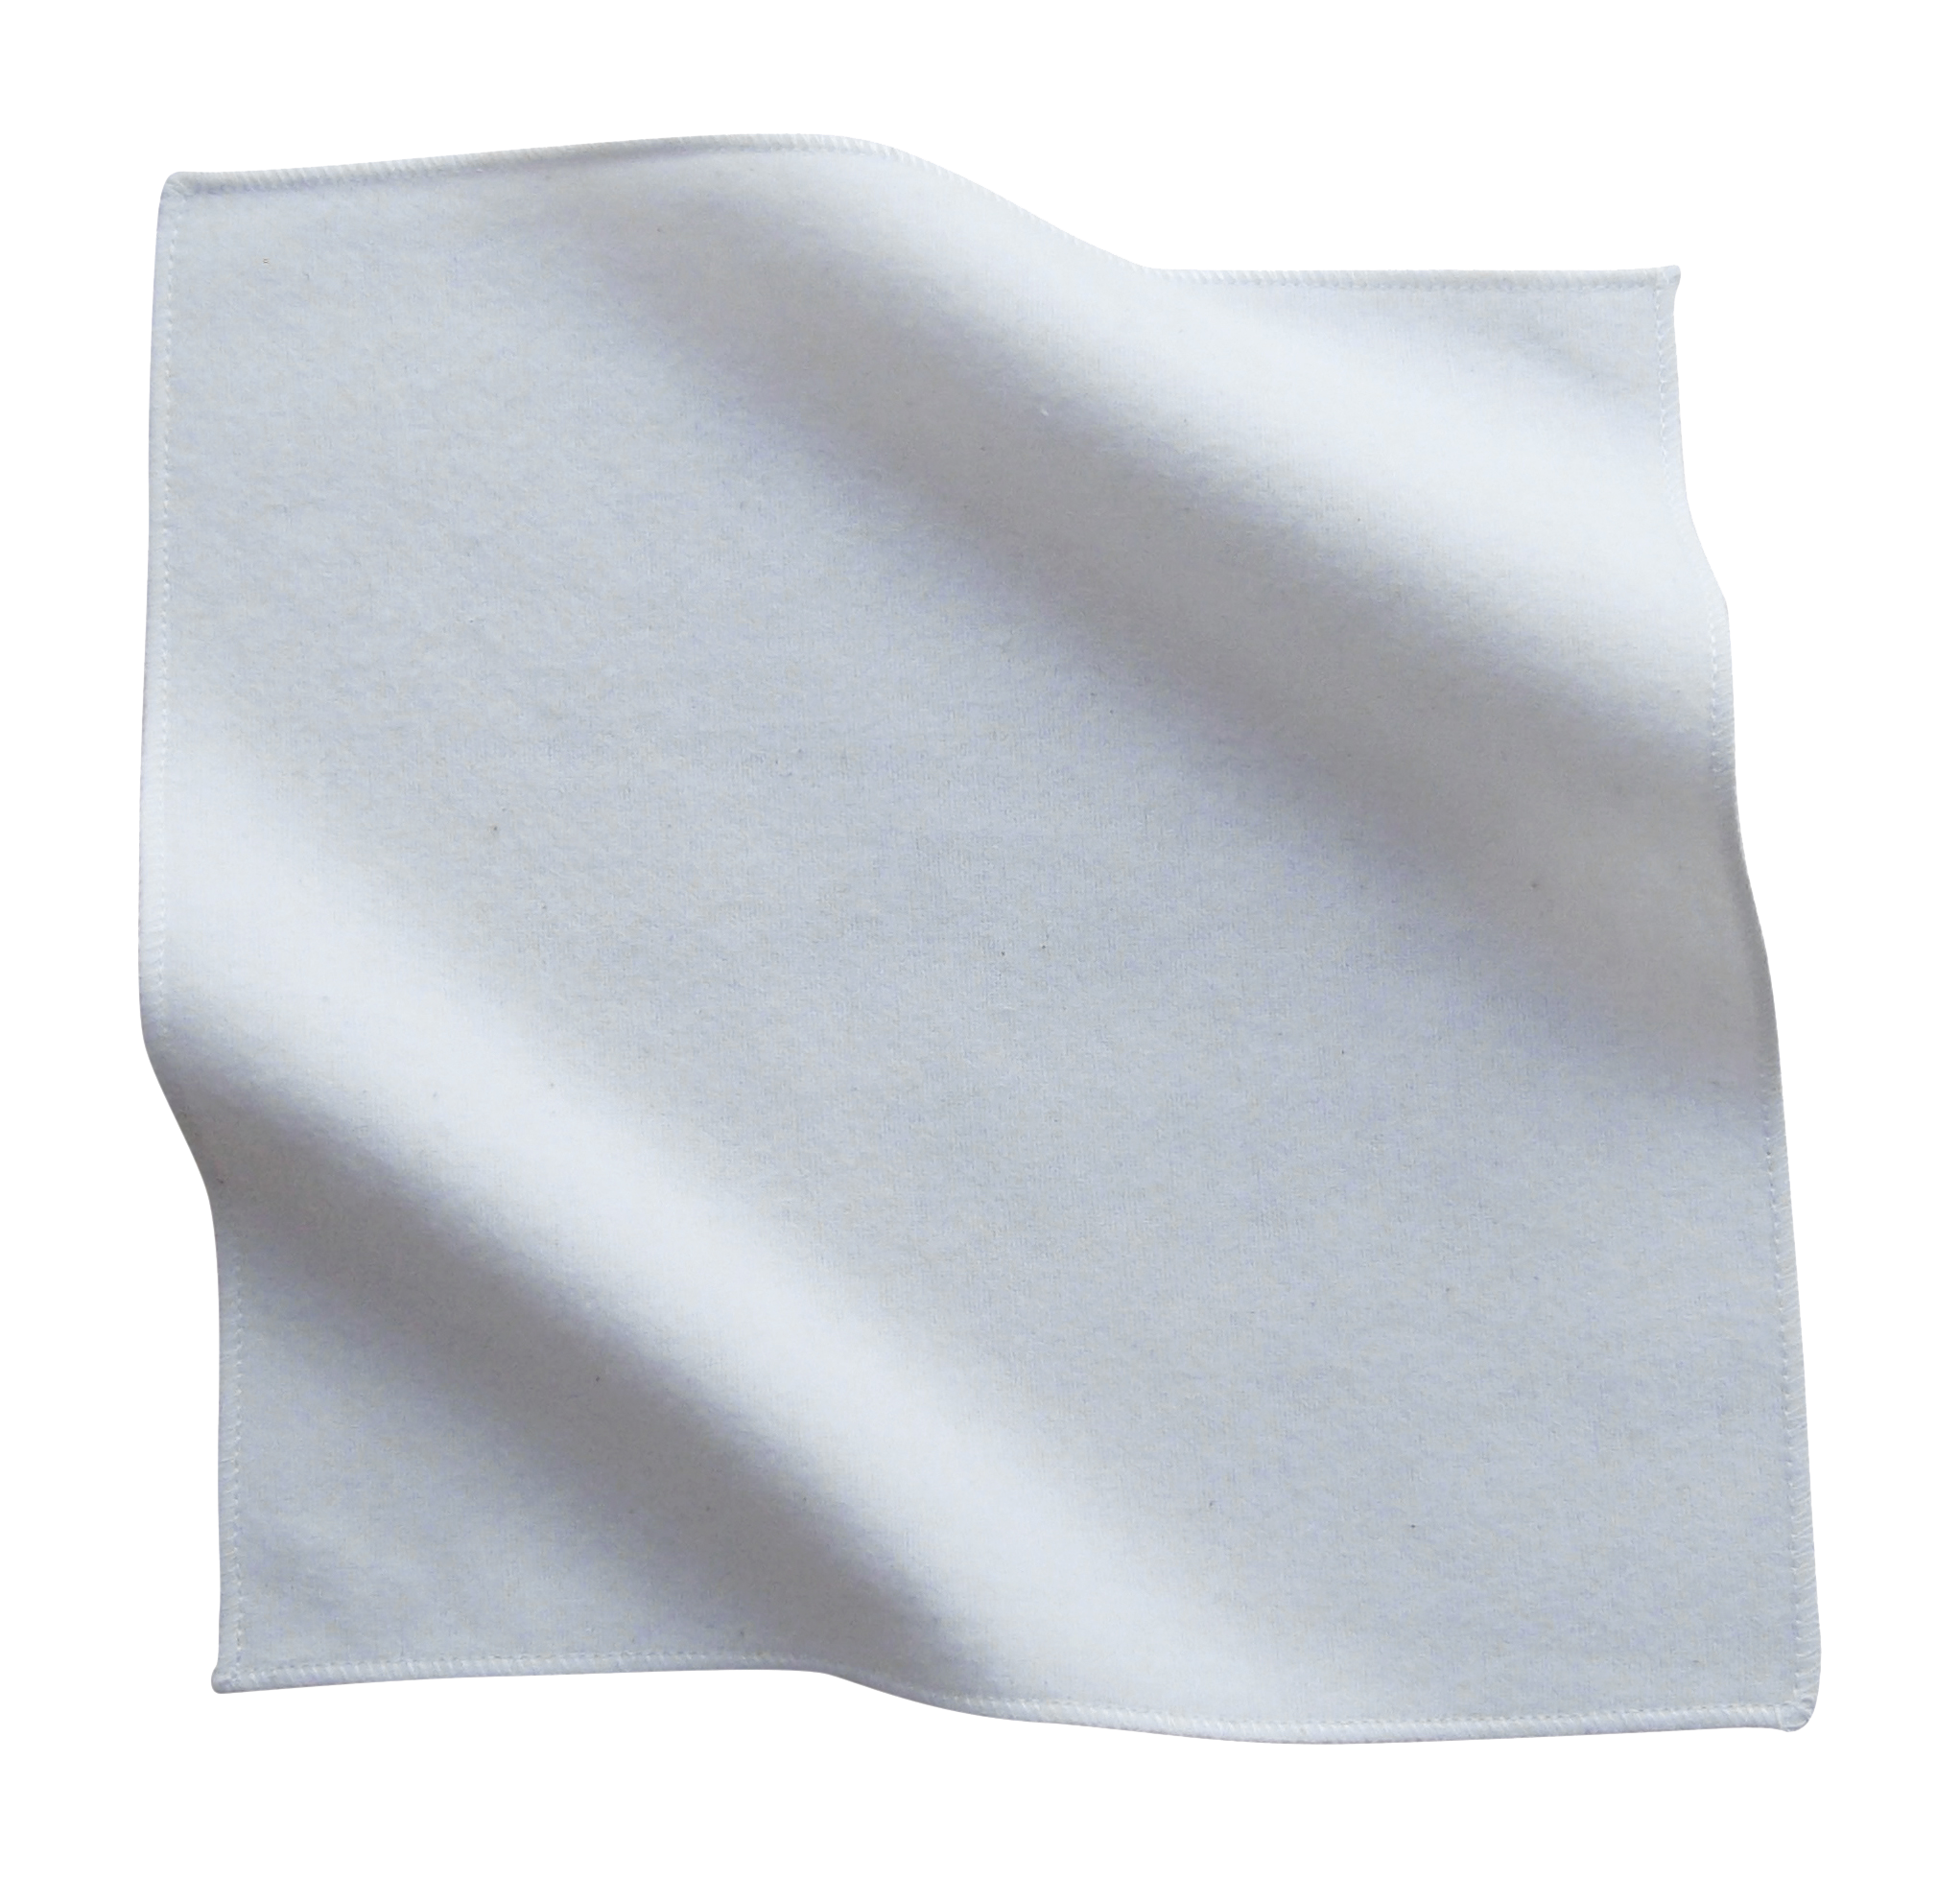 Handkerchief PNG Image